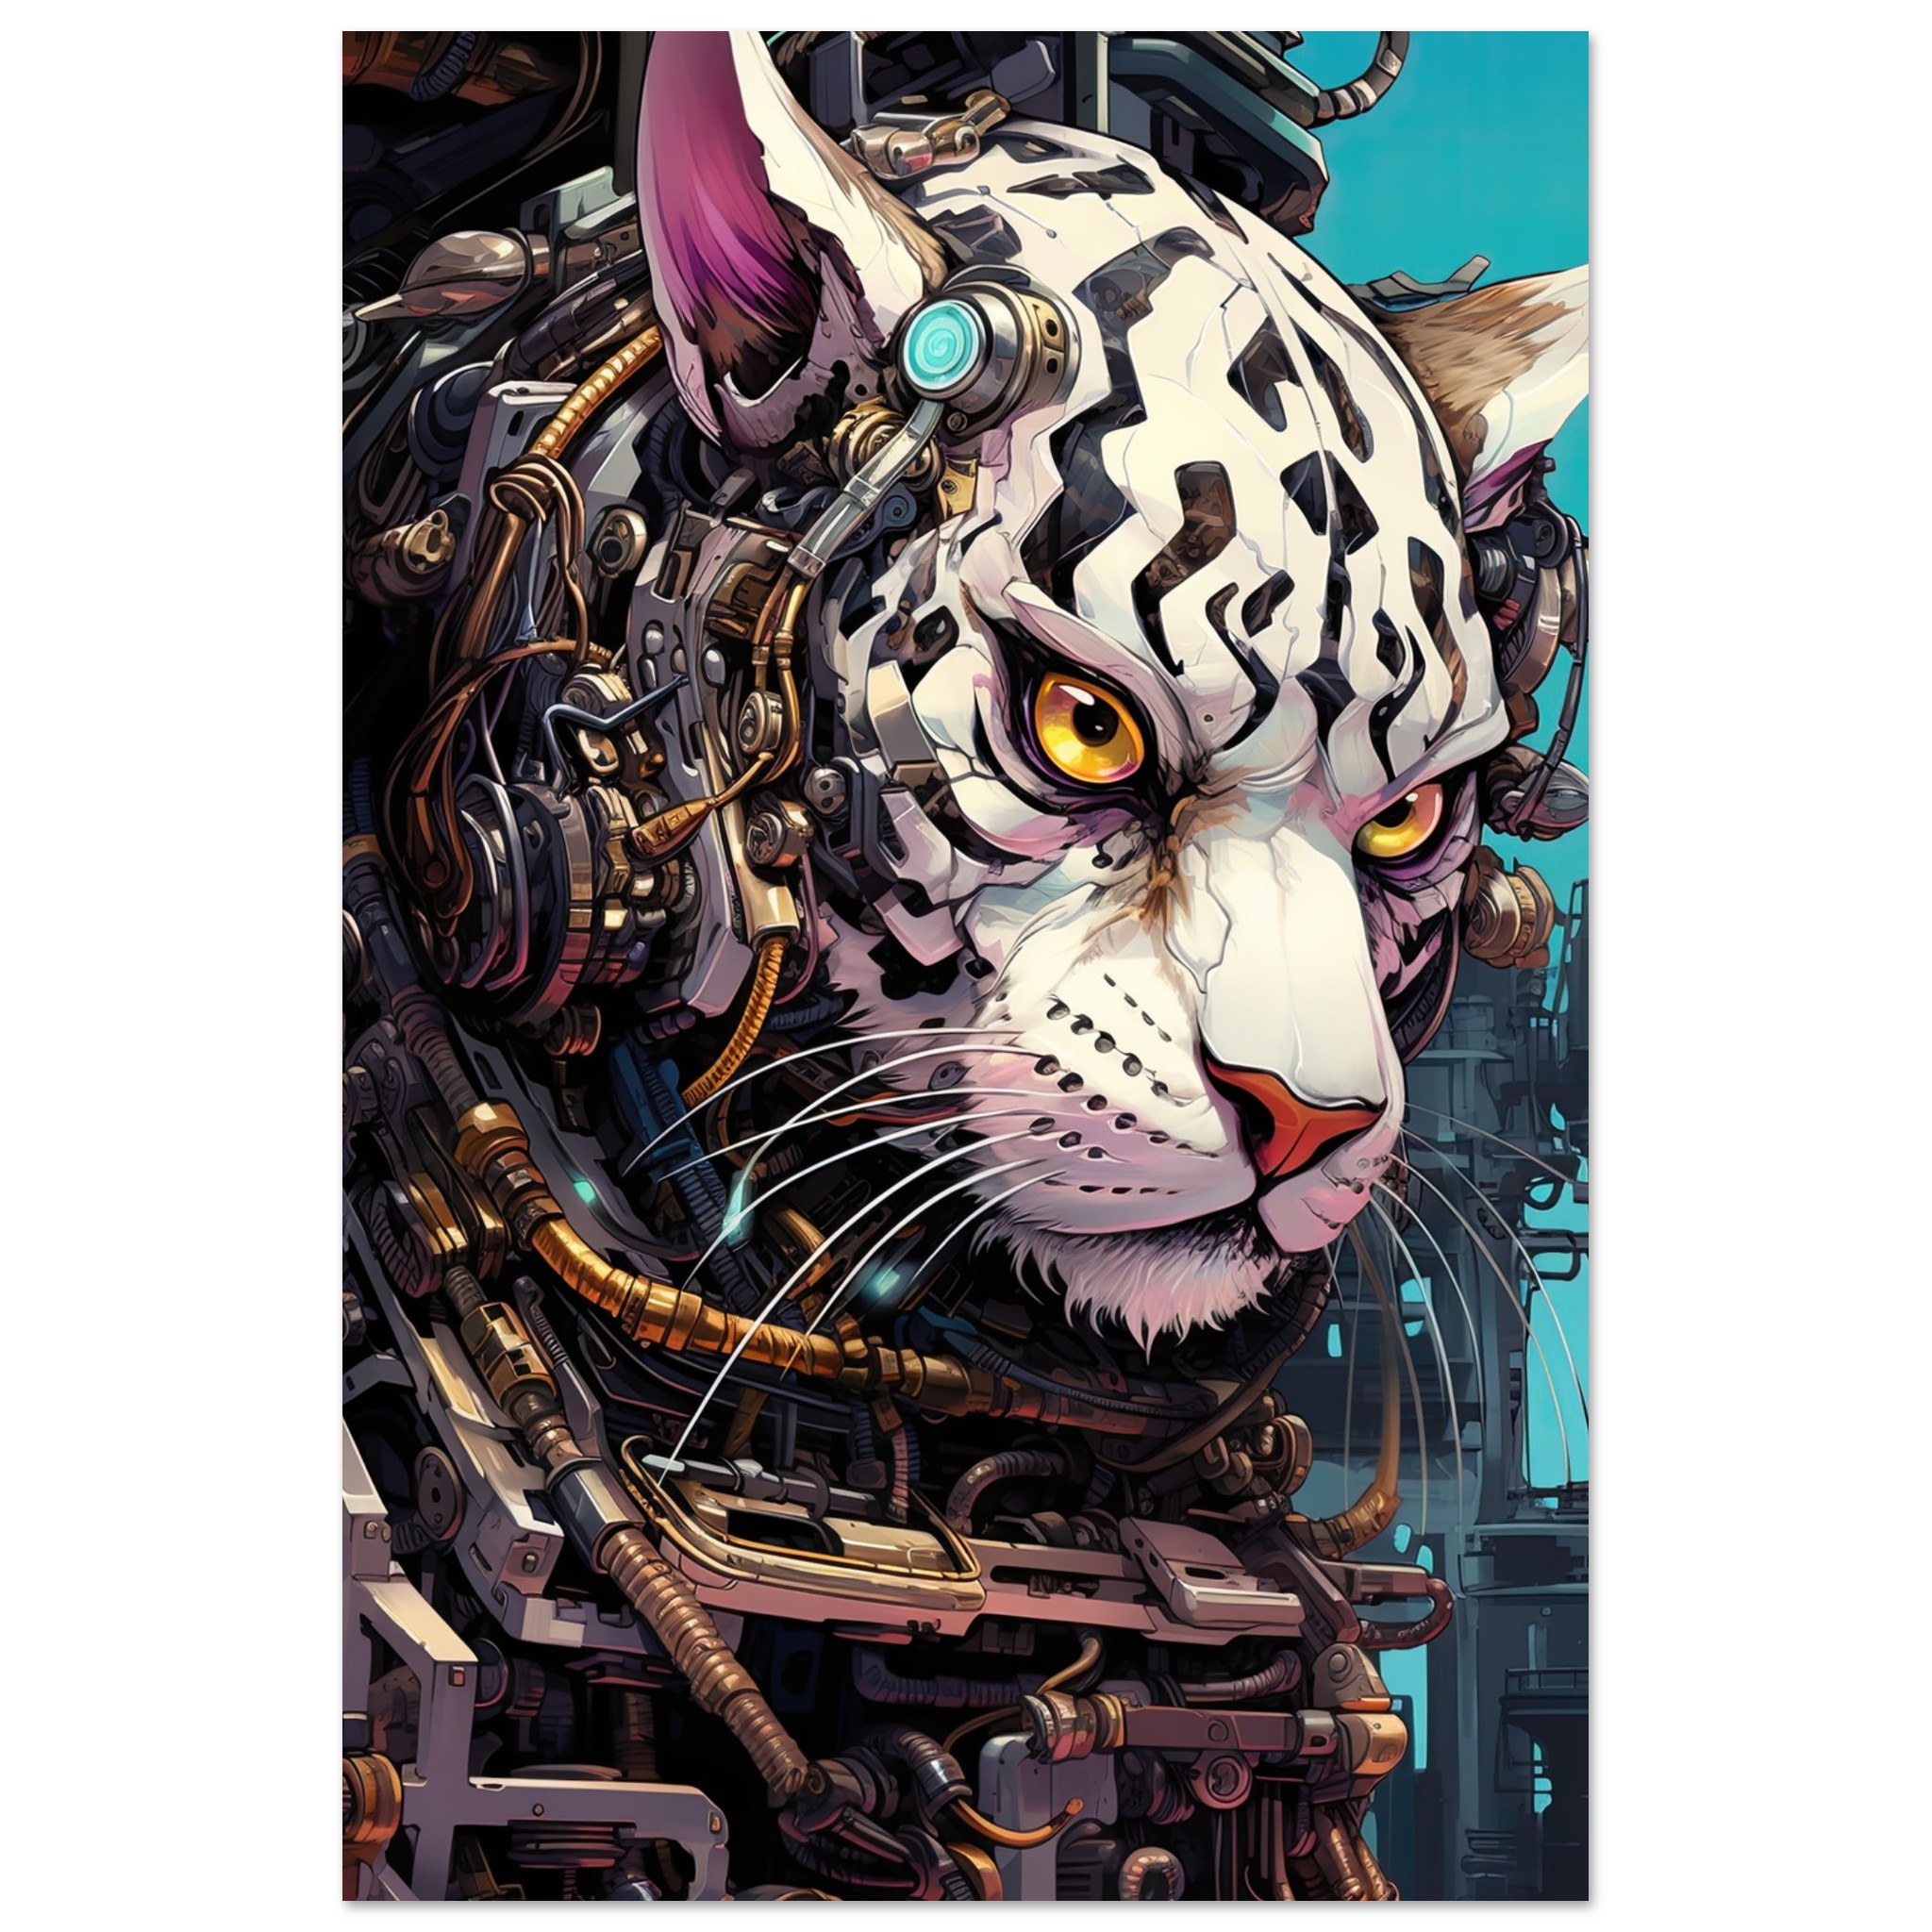 Cybernetic White Tiger Poster - 60x90 cm / 24x36″